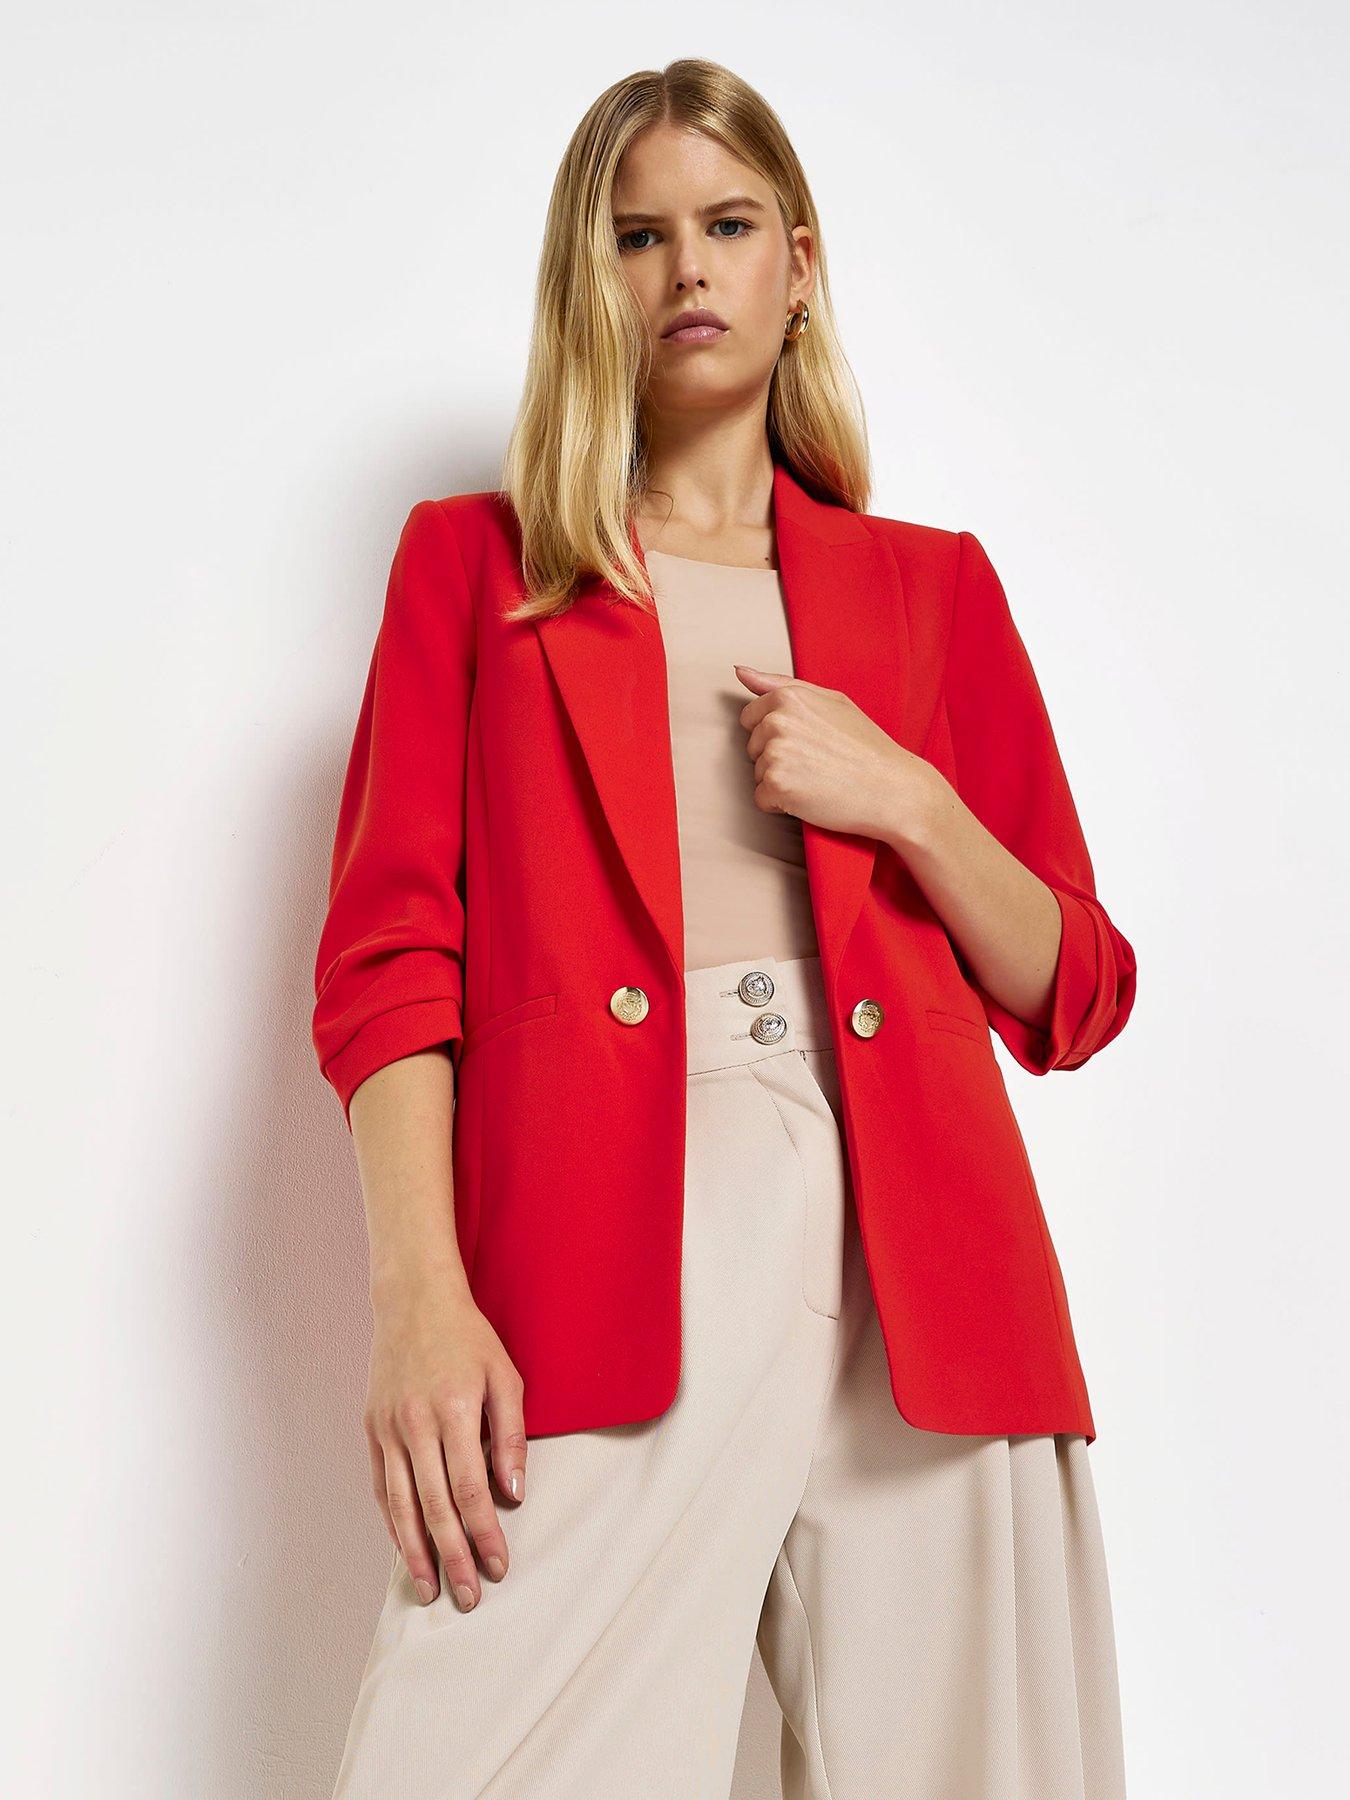 discount 64% Zara blazer WOMEN FASHION Jackets Blazer Bomber Red S 